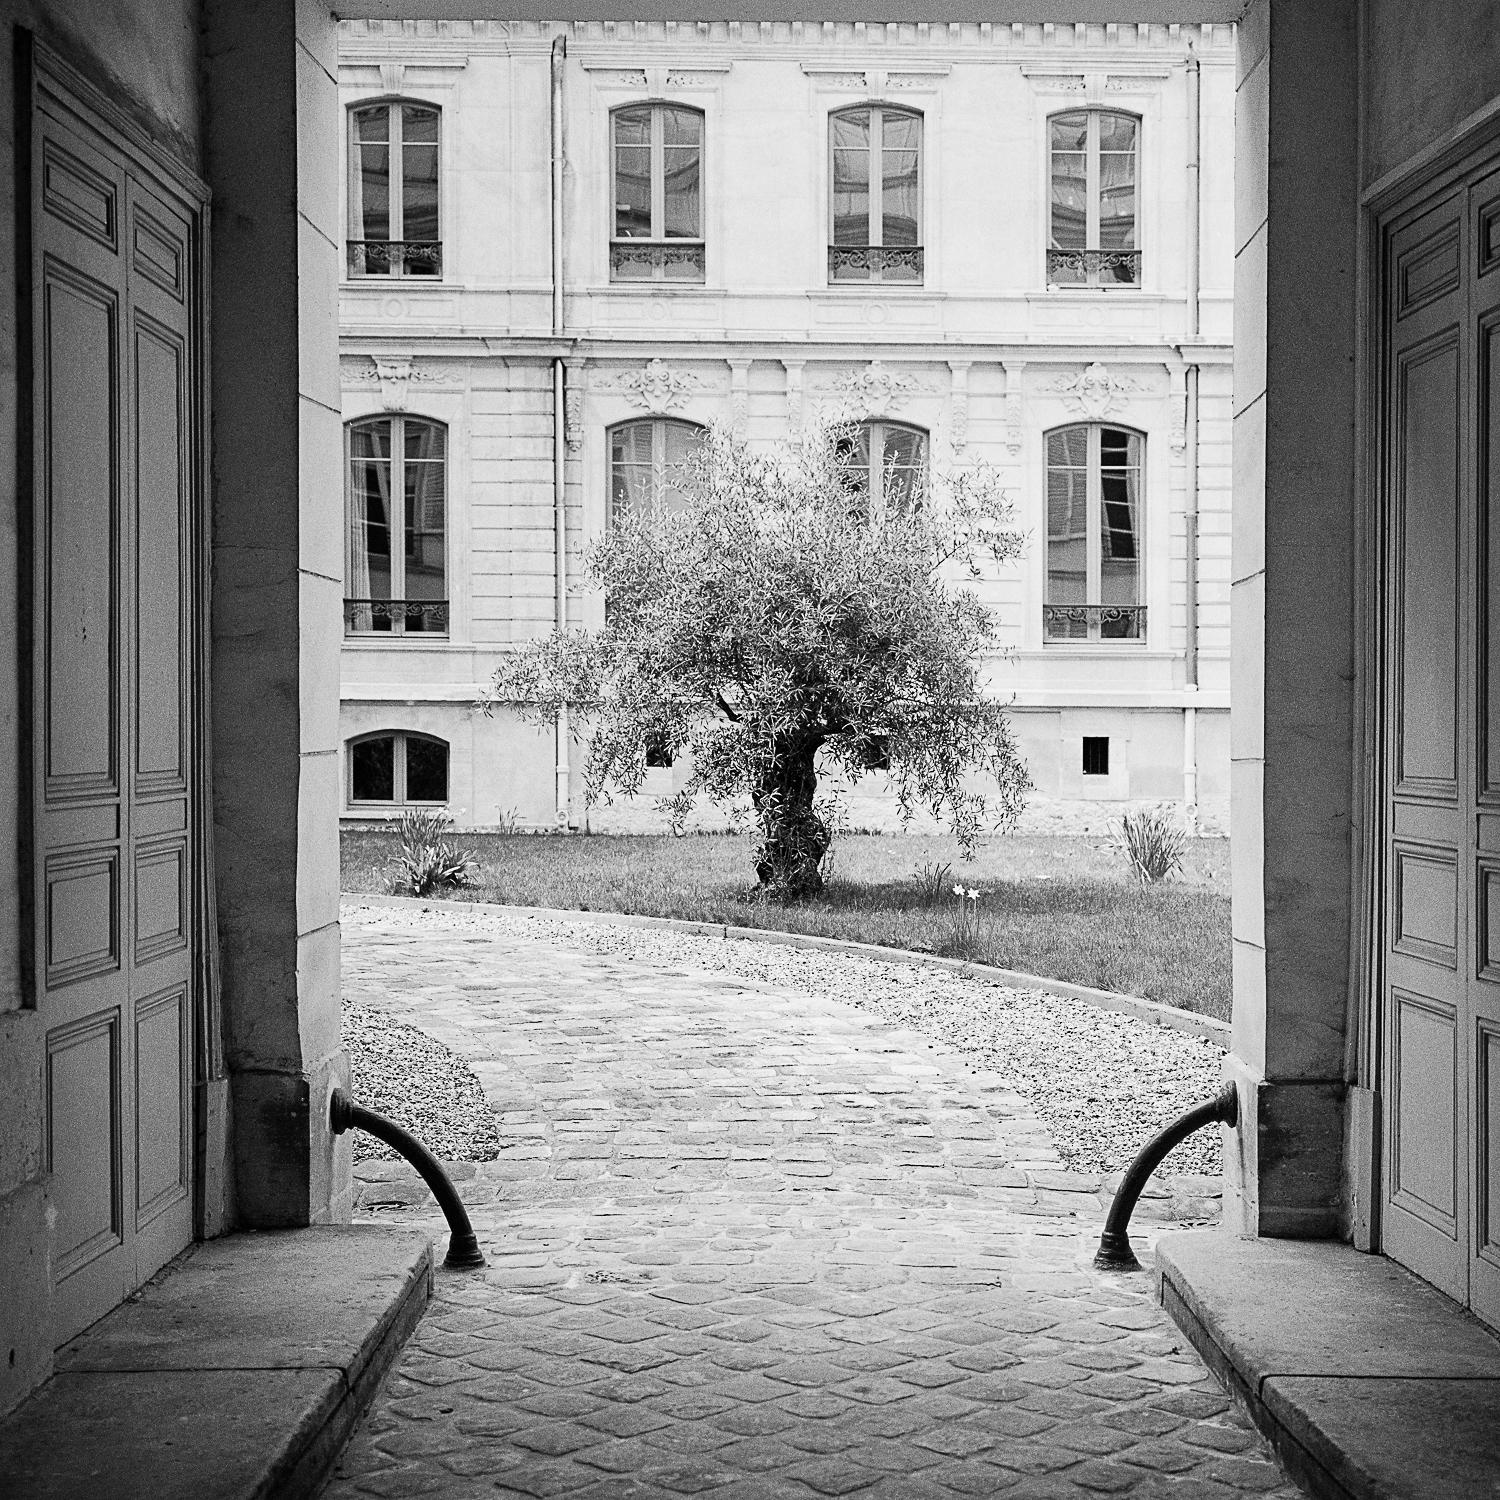 Tree in the Courtyard, Paris, Schwarz-Weiß-Fotografie, Pigmentdruck, gerahmt (Zeitgenössisch), Photograph, von Gerald Berghammer